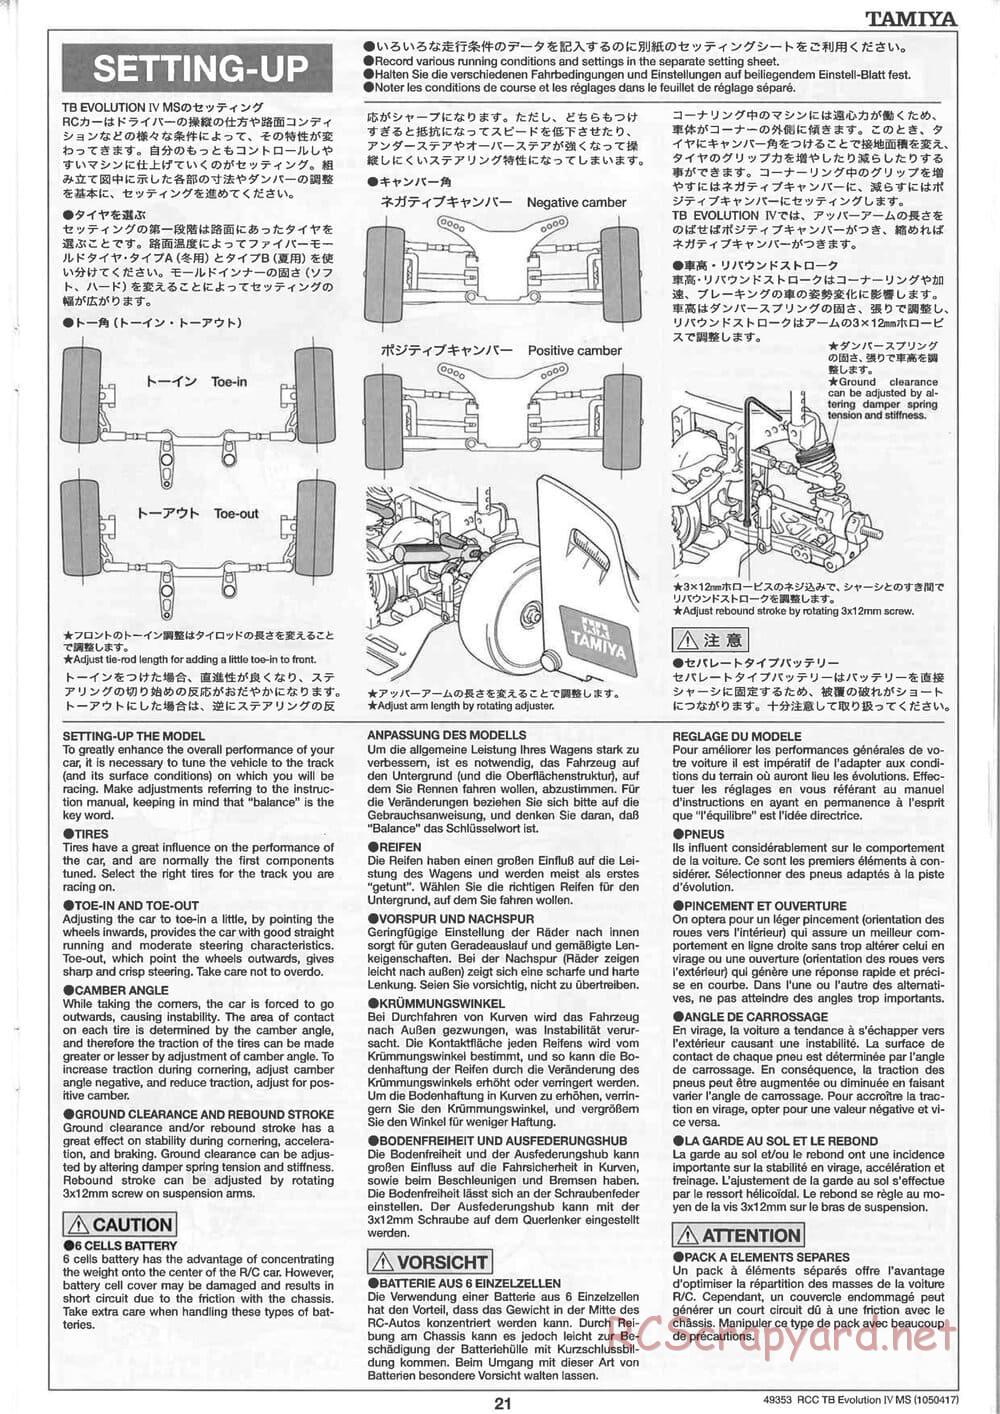 Tamiya - TB Evolution IV MS Chassis - Manual - Page 21